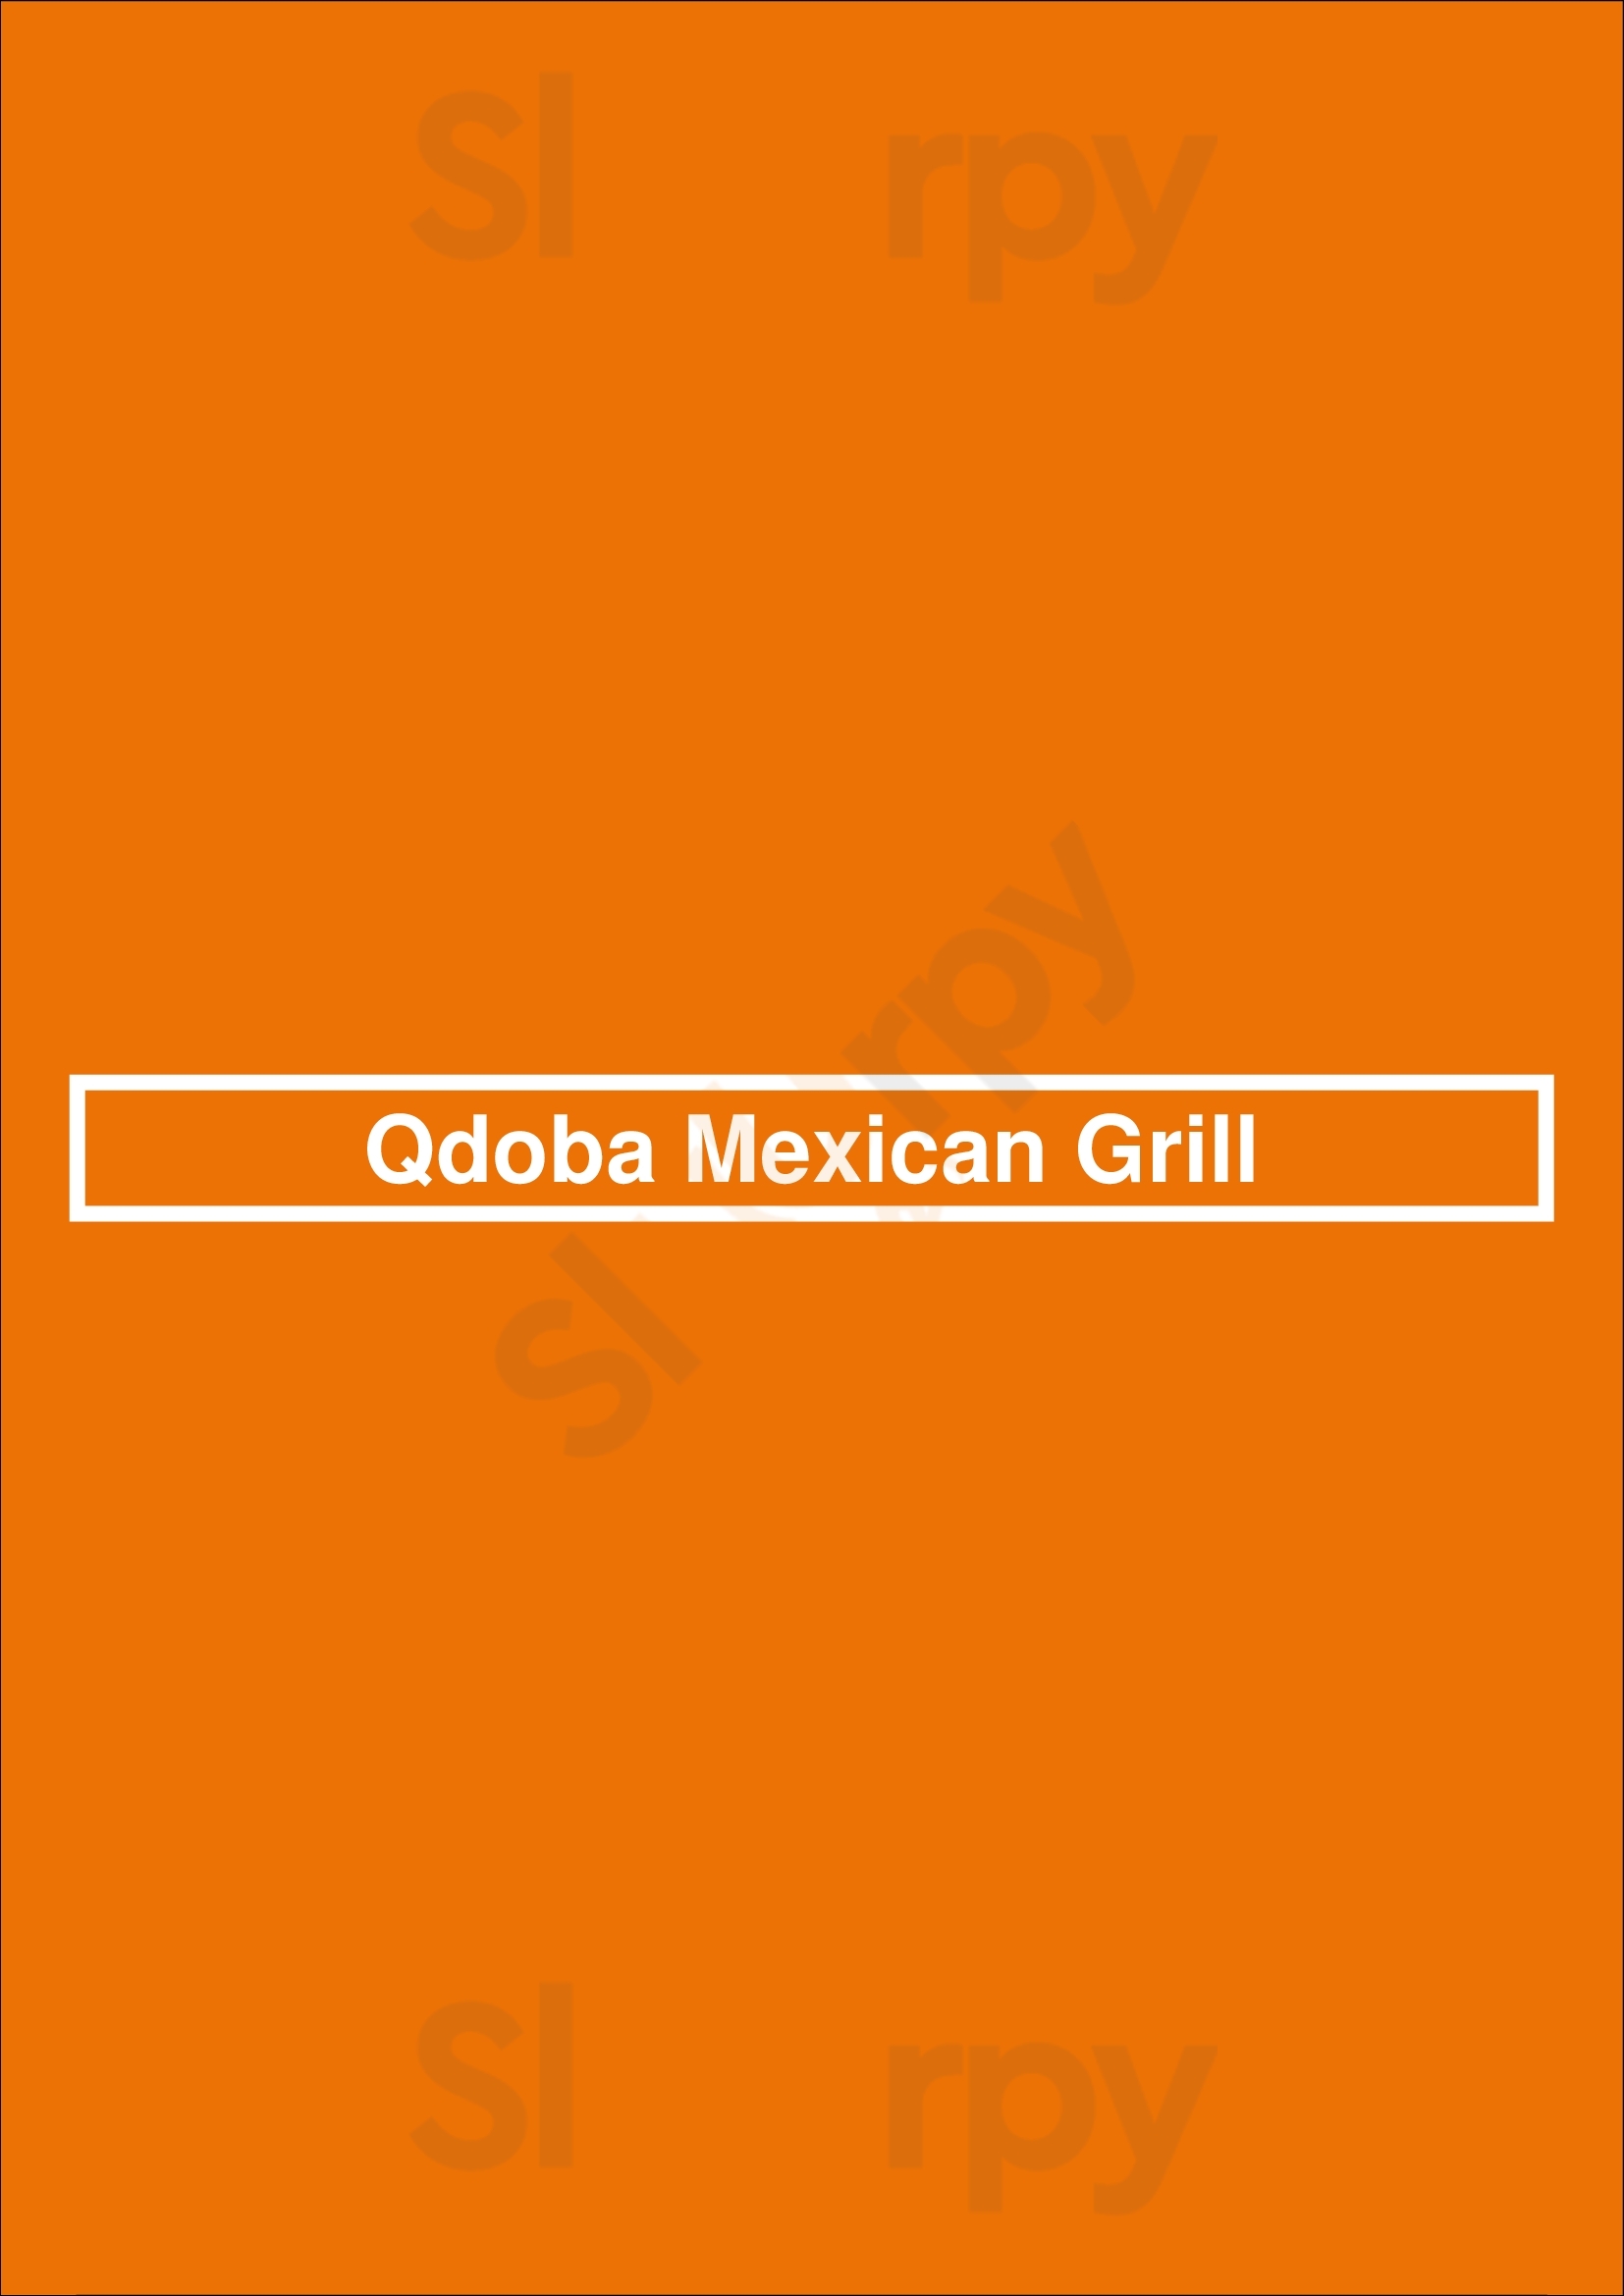 Qdoba Mexican Grill Indianapolis Menu - 1